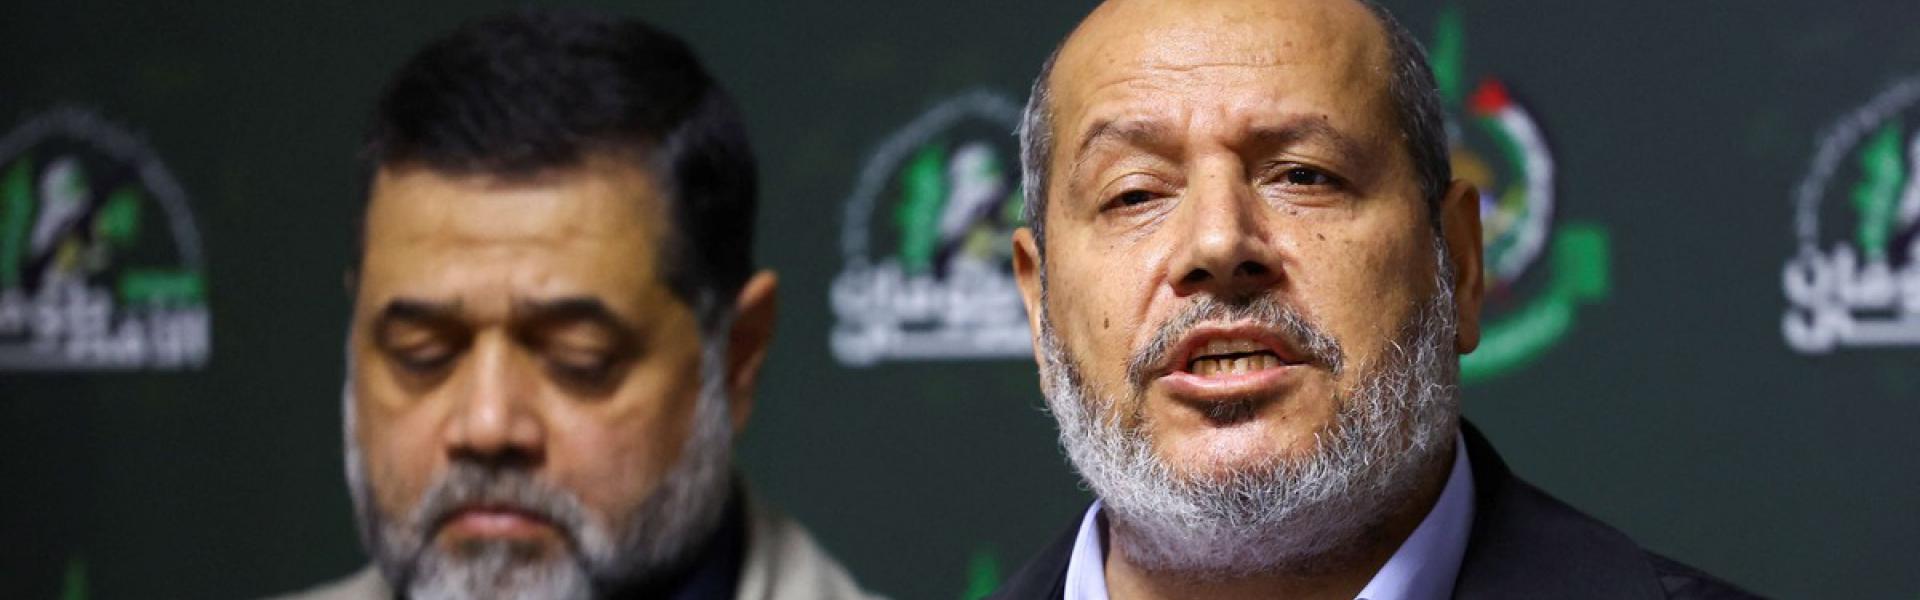 حماس مستعدة للموافقة على هدنة مع اسرائيل لمدة 5 سنوات